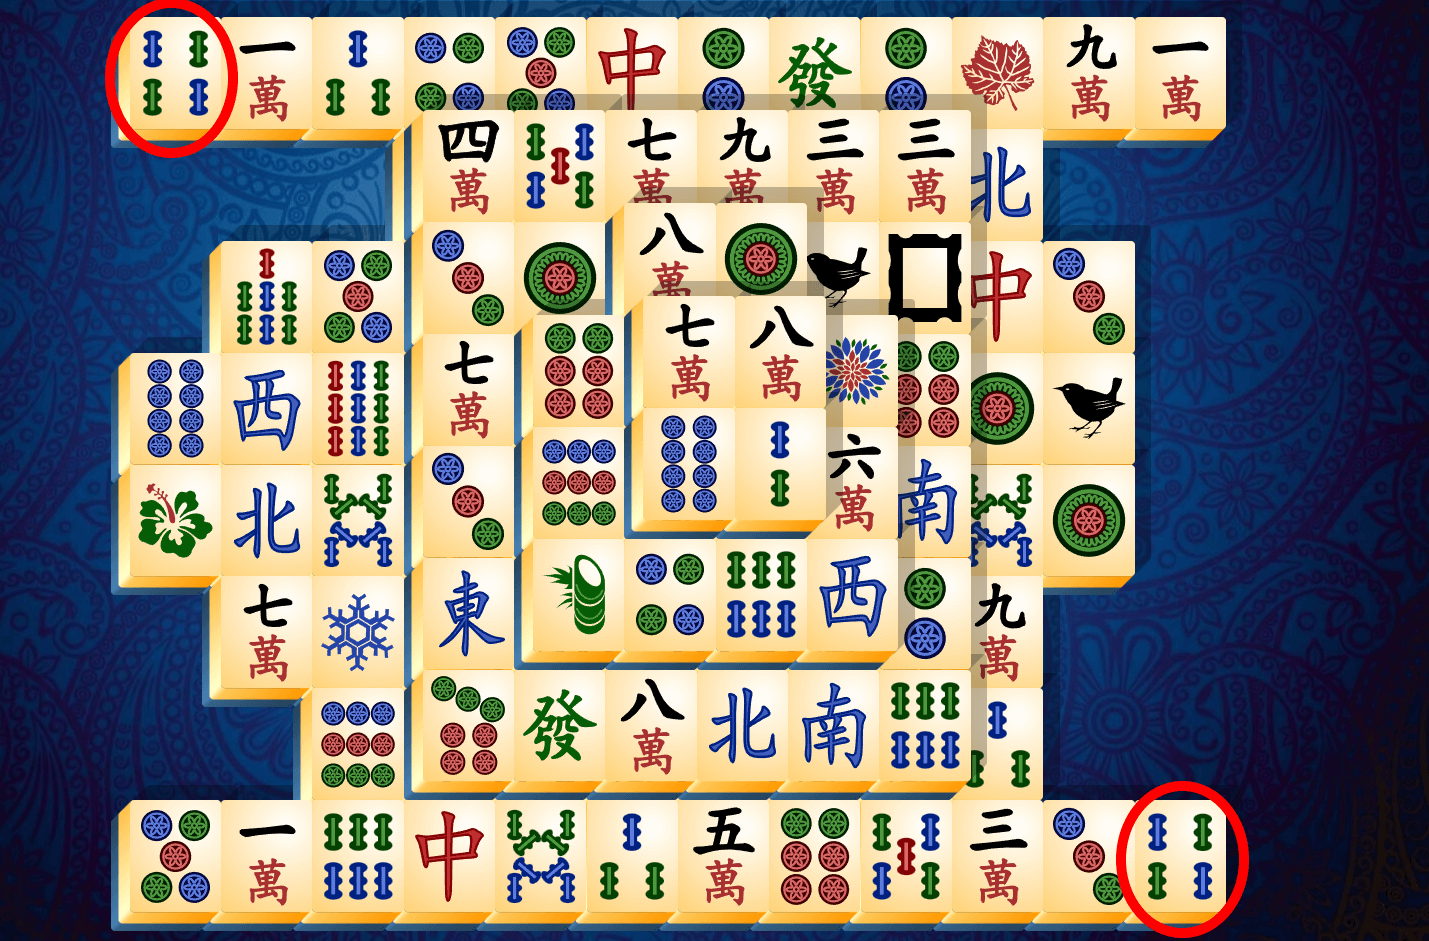 Anleitung zu Mahjong Solitär, Schritt 5